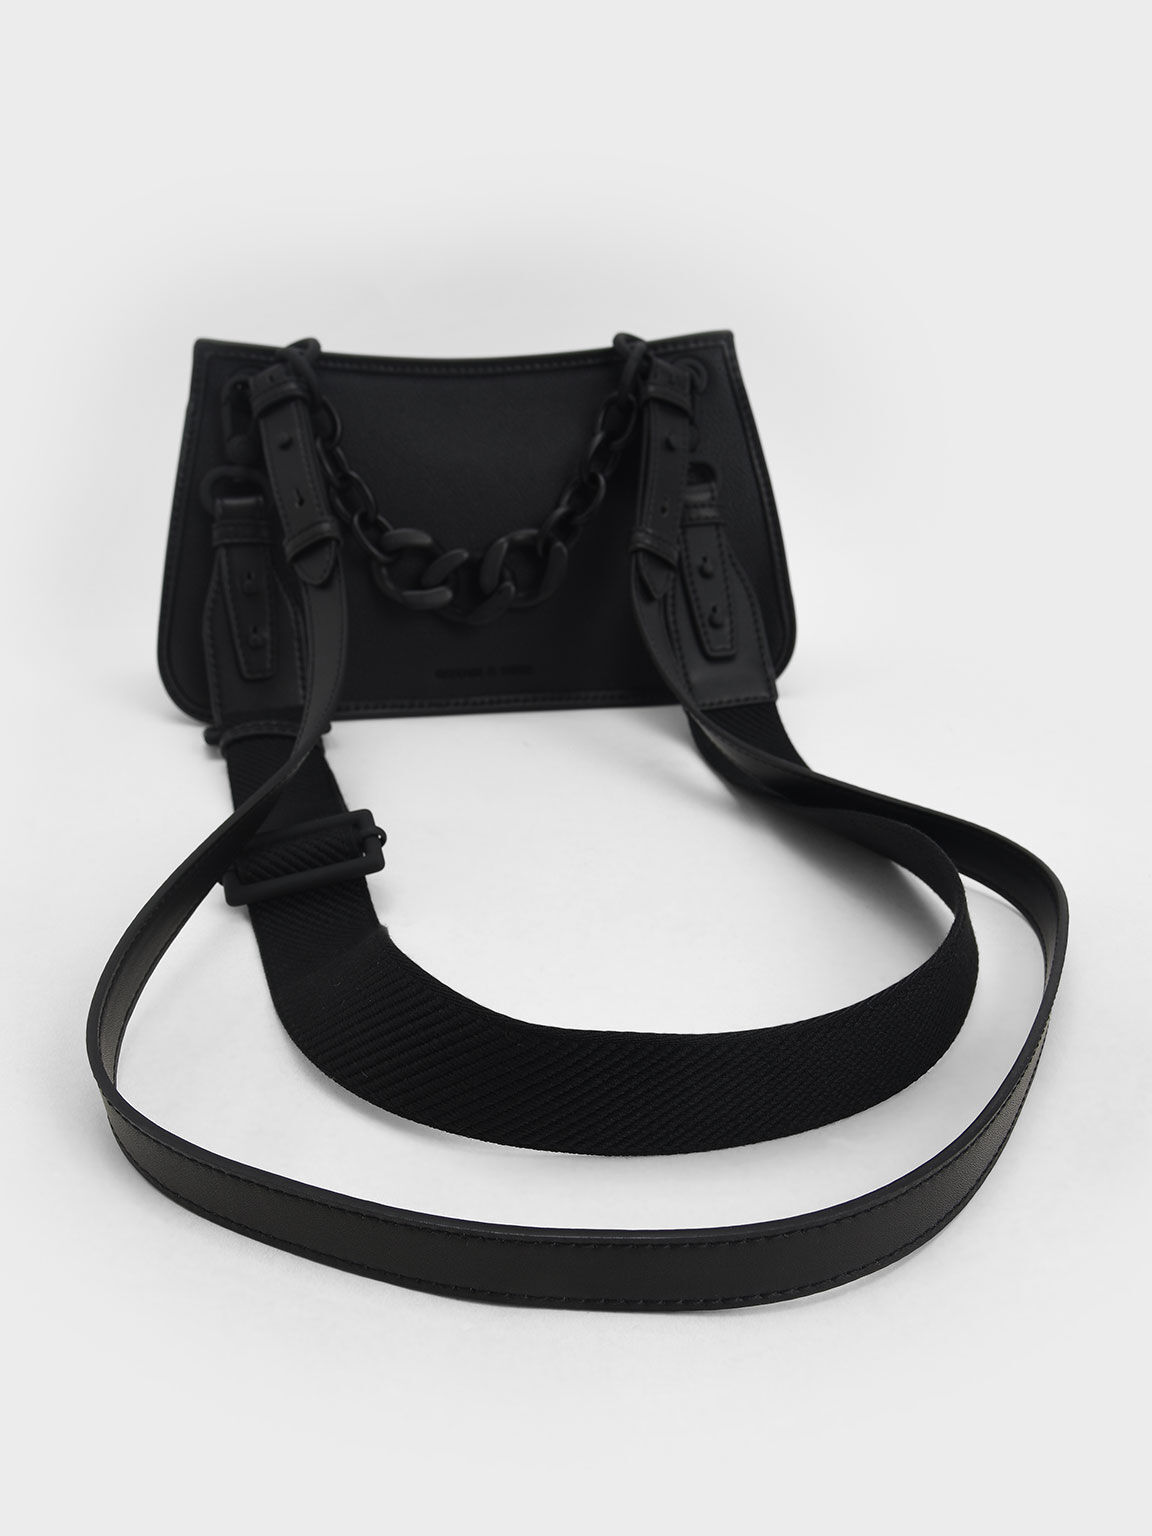 Marlowe Lock-Motif Chain Handle Bag, Black, hi-res